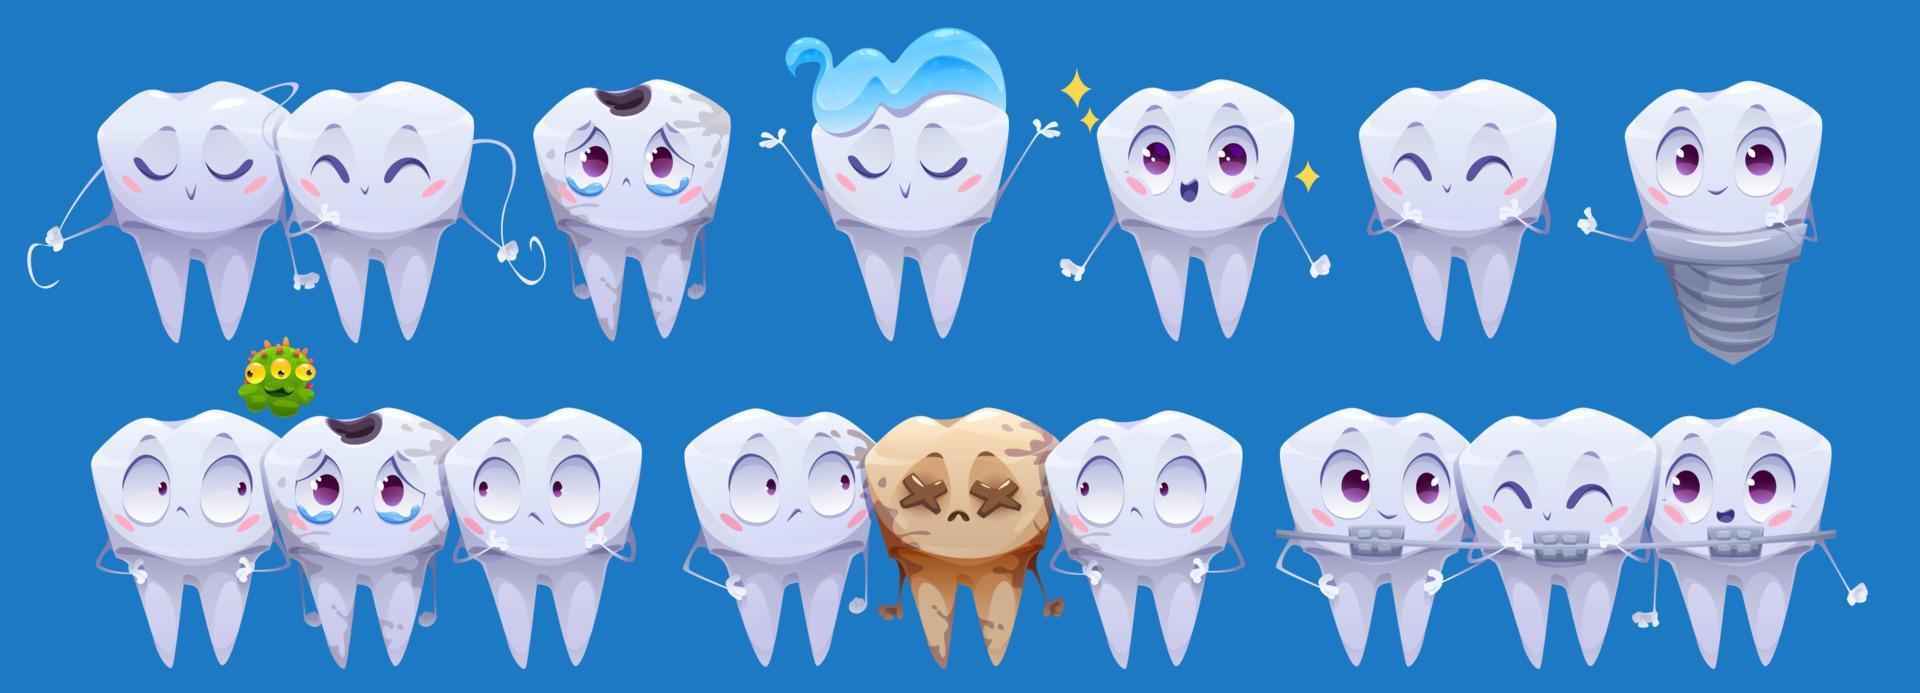 personnages de dessins animés de dents, dent propre et sale vecteur